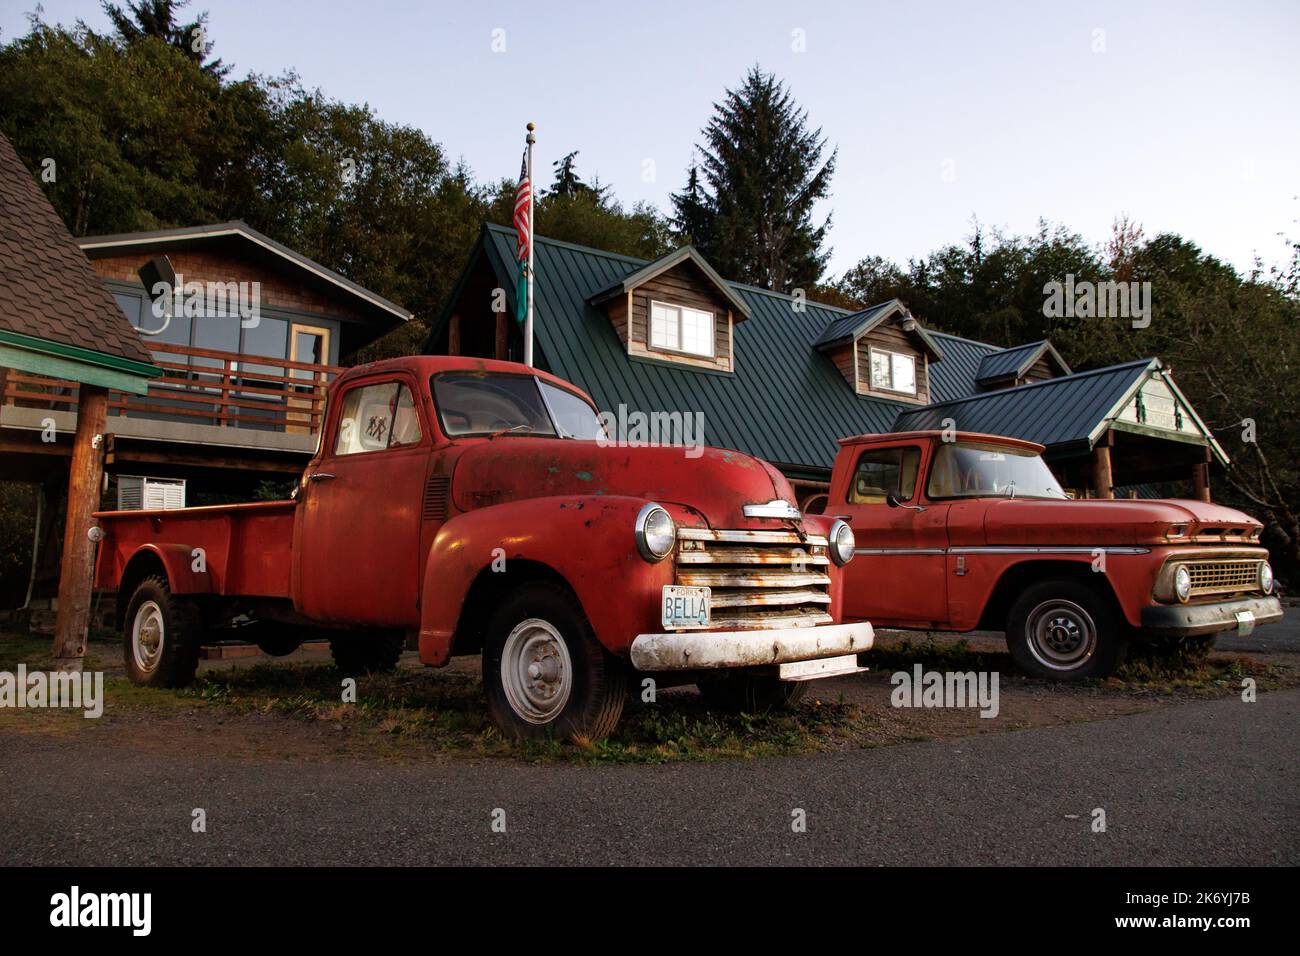 Le camion rouillé rouge de Bella de Twilight. Le légendaire camion de Bella devant le centre d'accueil de Forks à Washington Banque D'Images